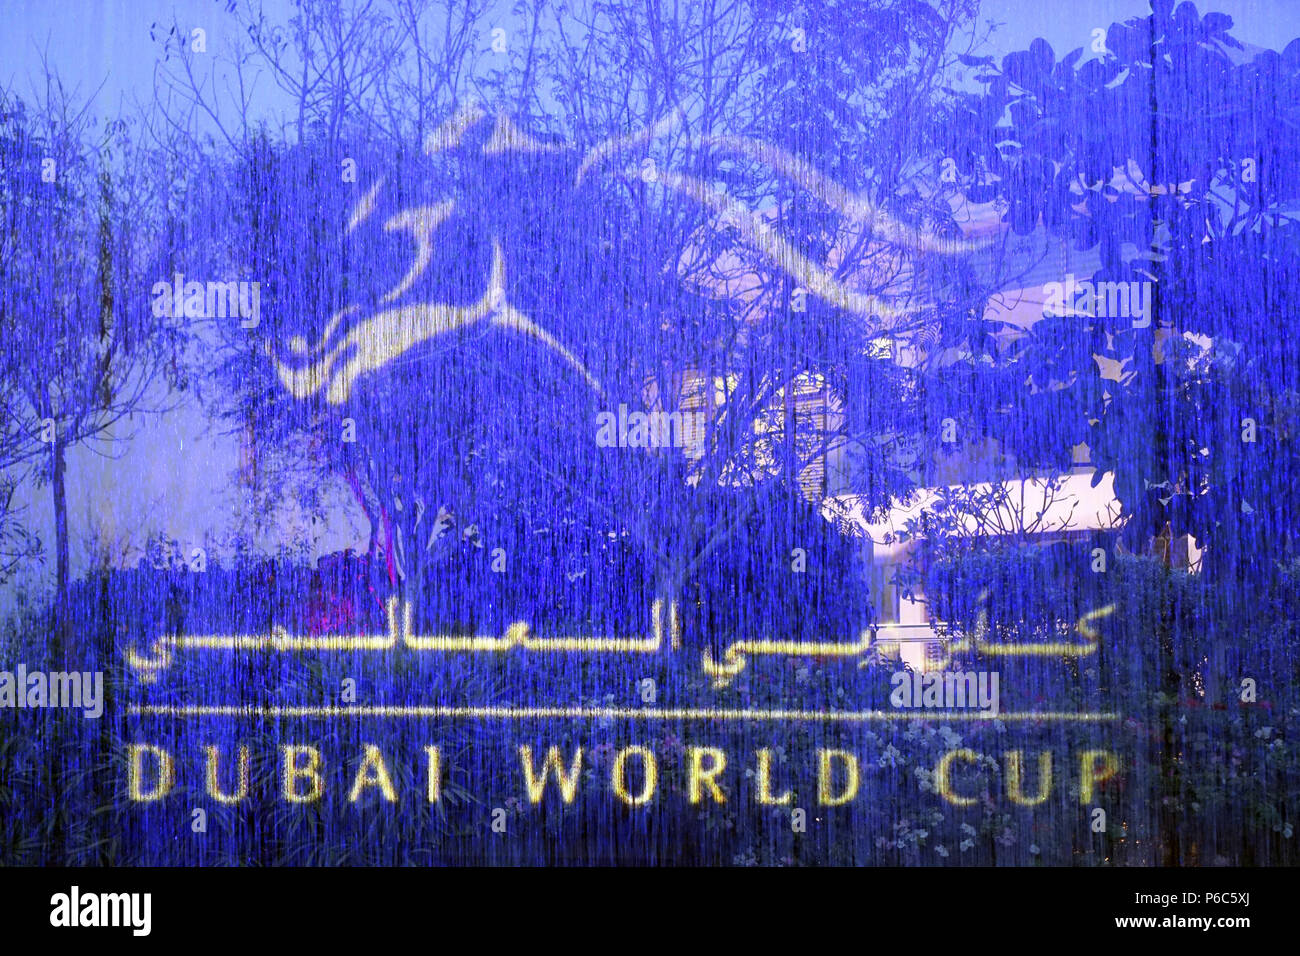 Dubai, Vereinigte Arabische Emirate, Dubai World Cup auf einem Brunnen Stockfoto